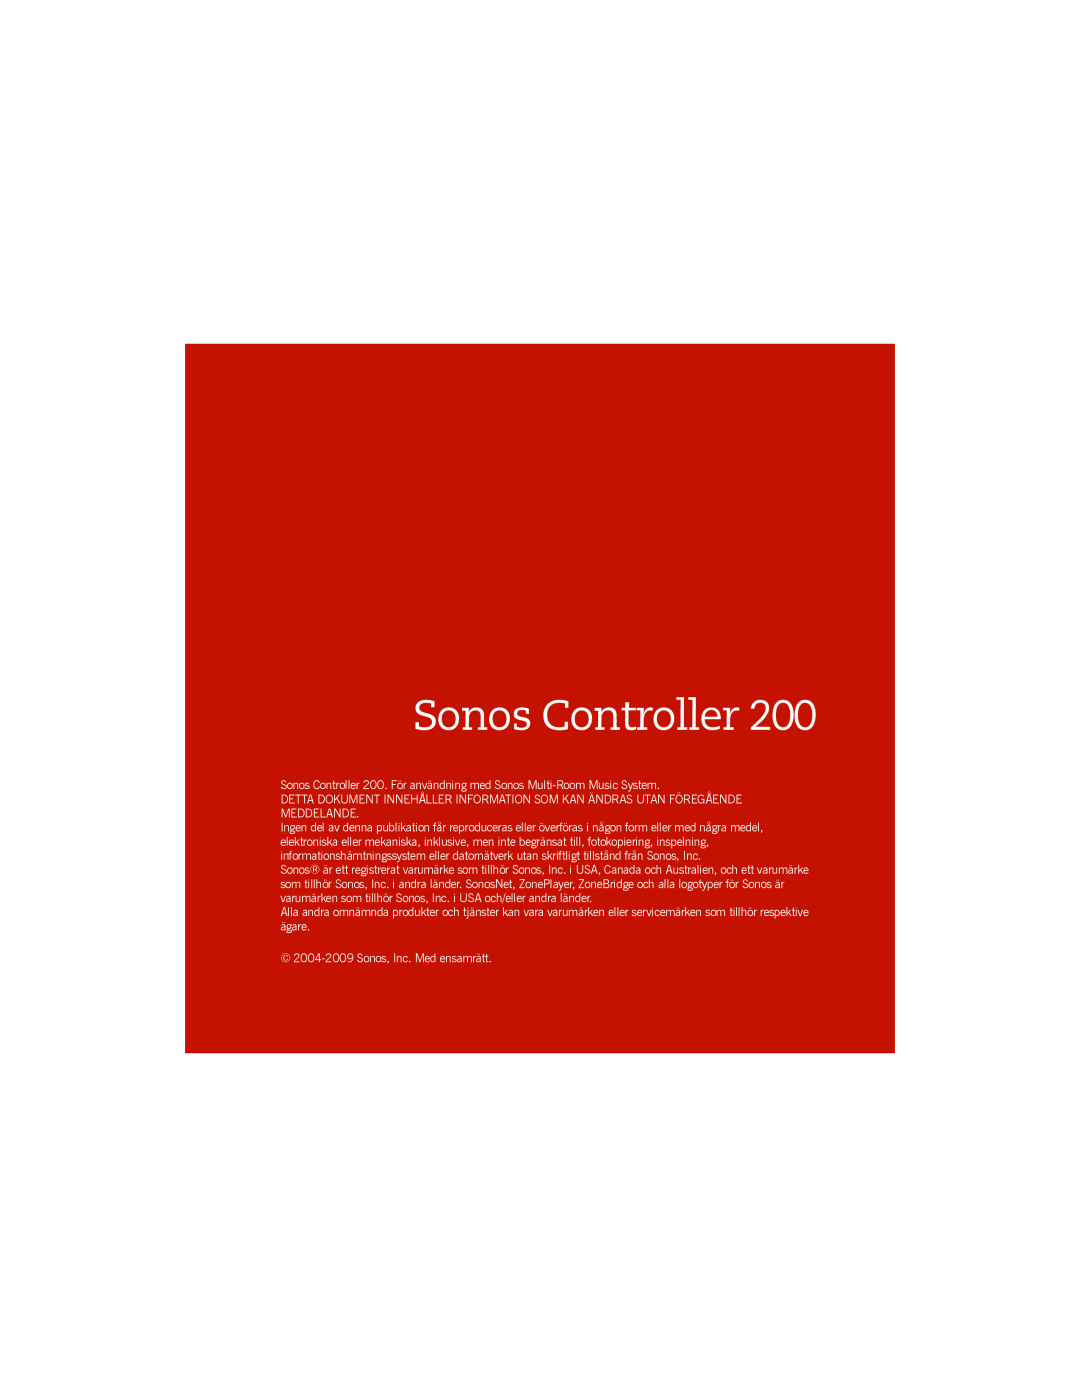 Sonos manual Sonos Controller, 2004-2009Sonos, Inc. Med ensamrätt 